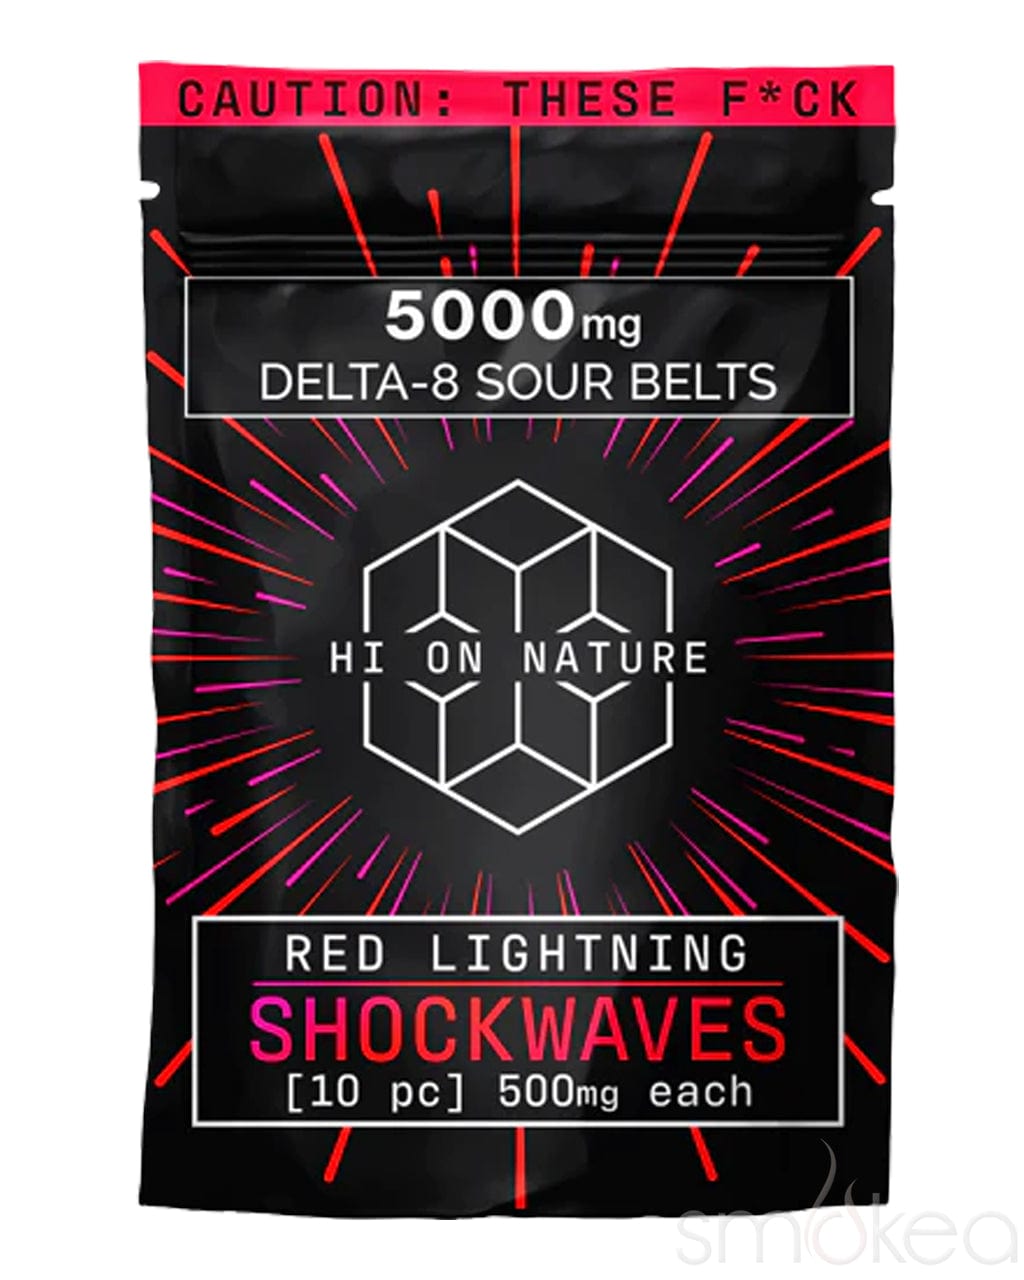 Hi On Nature 5000mg Delta 8 Shockwaves - Red Lightning